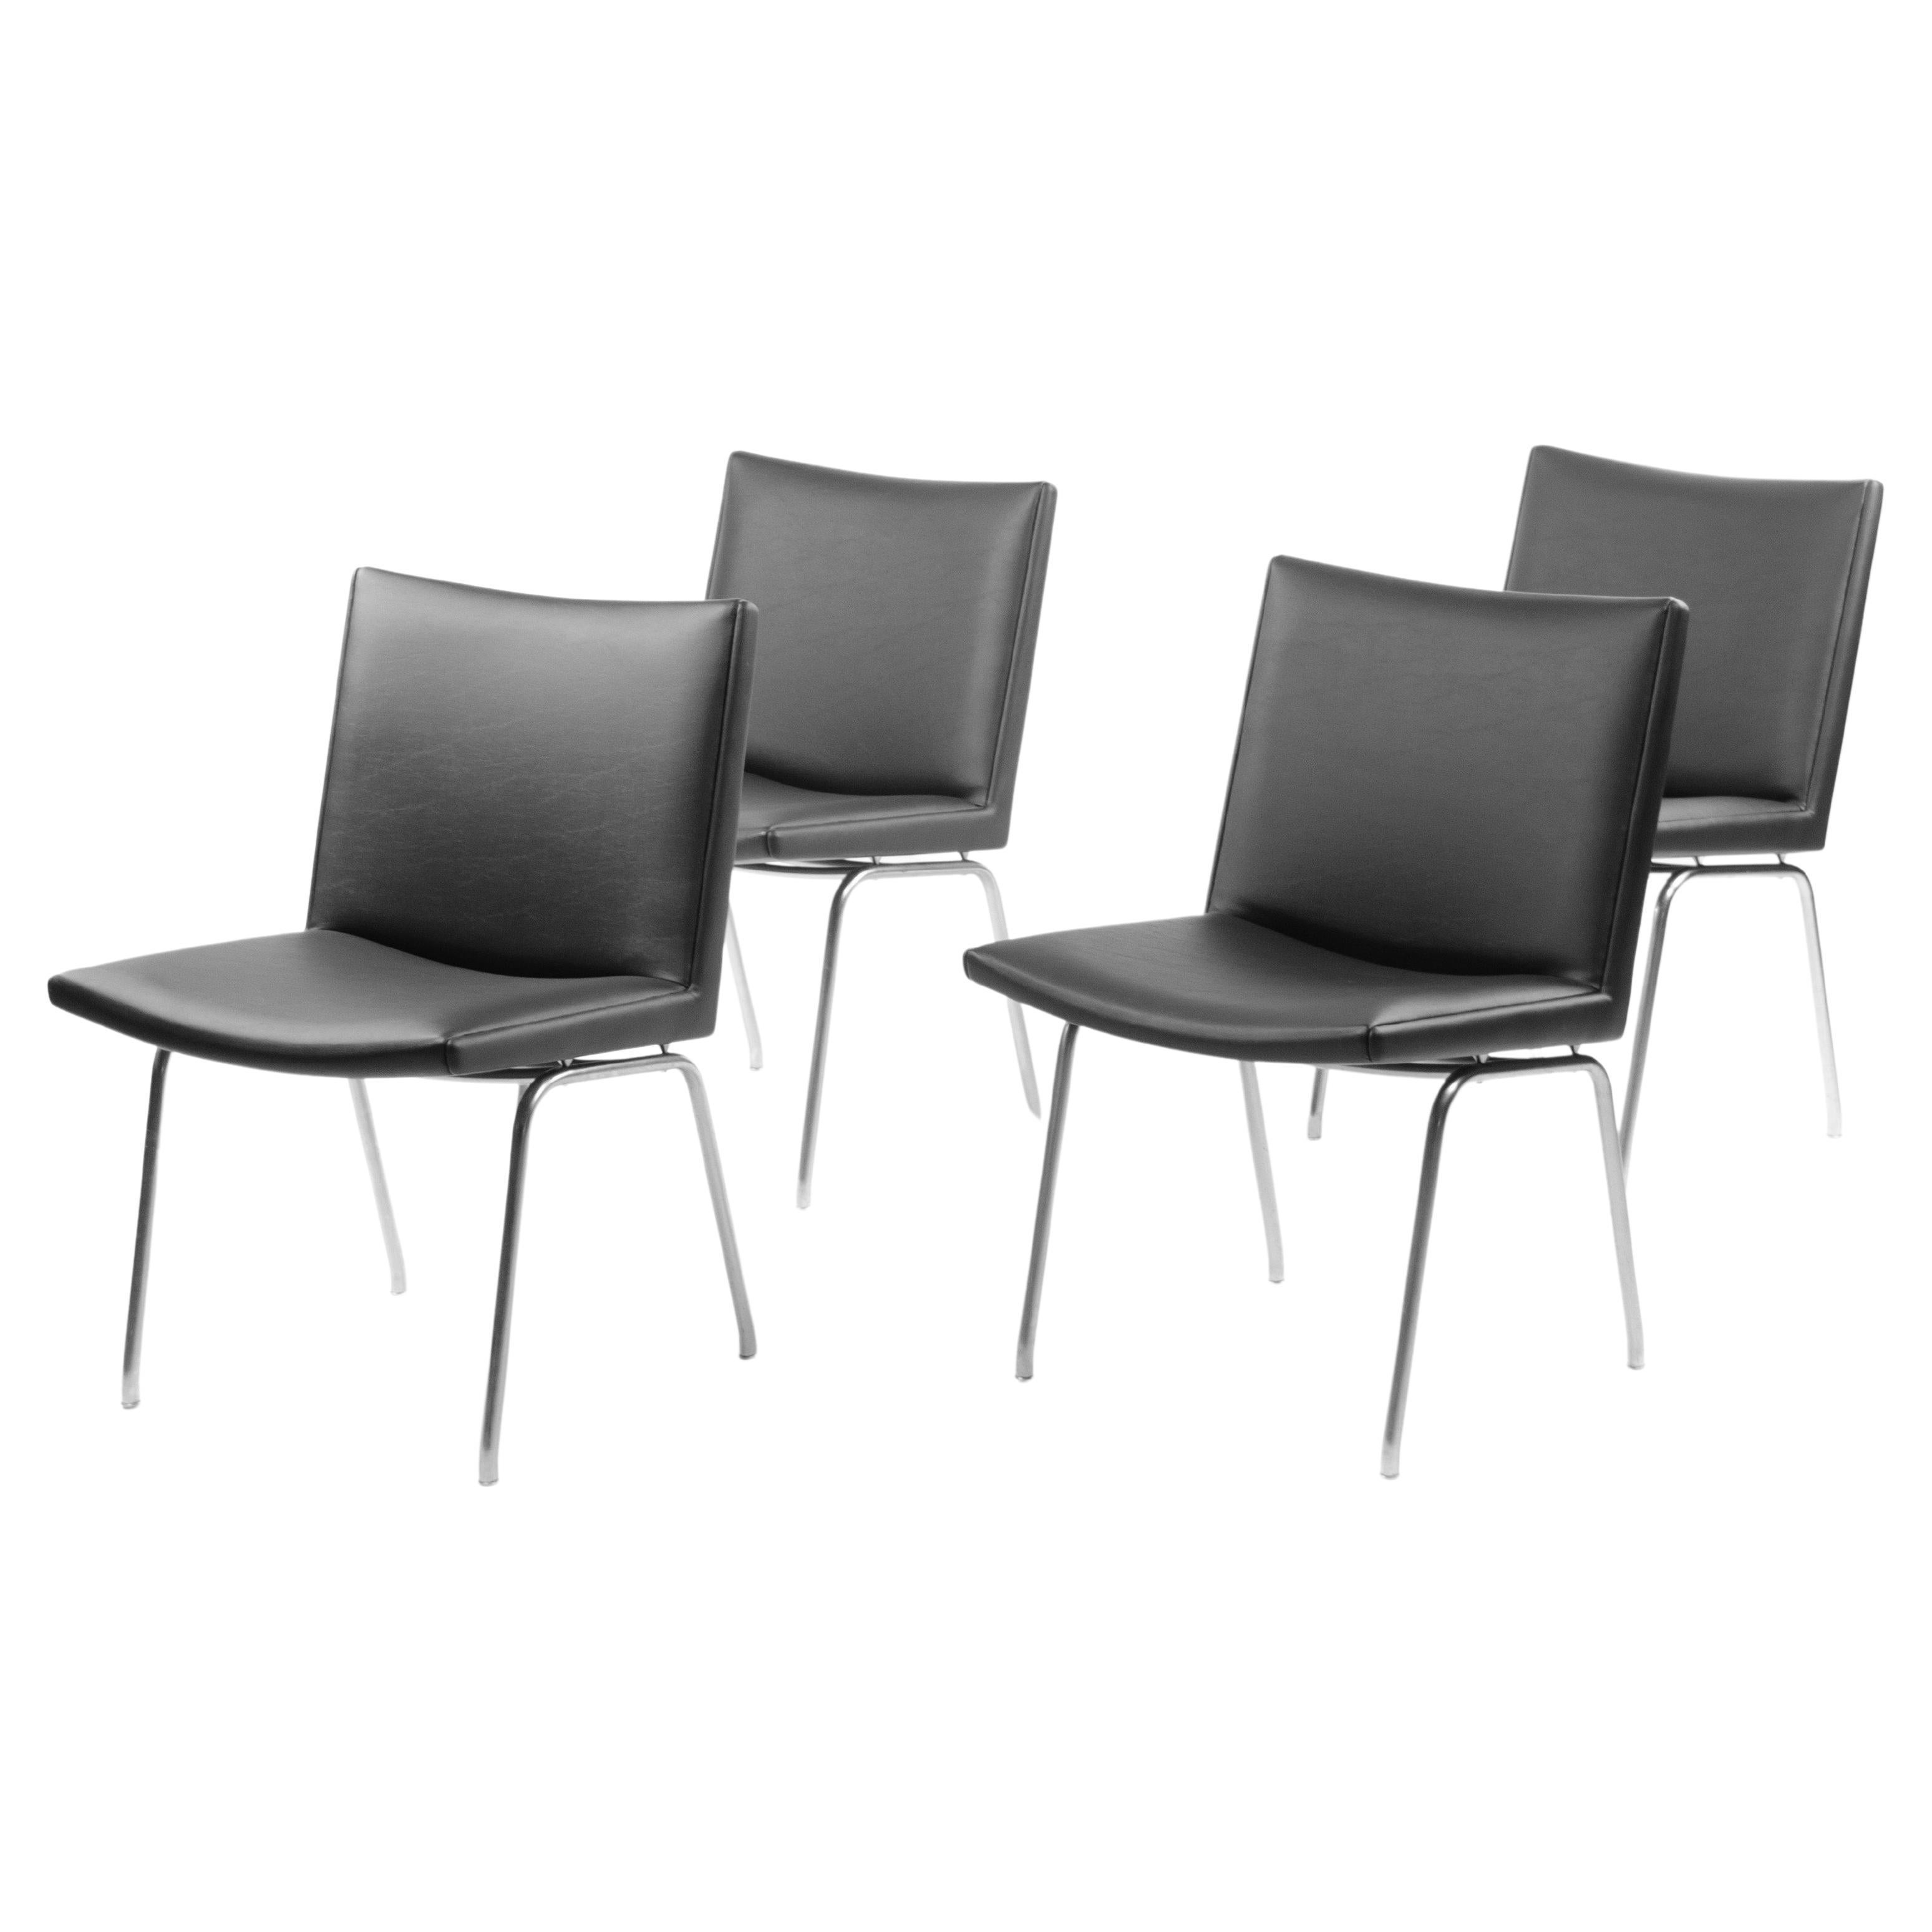 Zum Verkauf steht ein Satz von zehn (der angegebene Preis umfasst alle zehn Stühle) Hans Wegner Flughafenstühlen AP38, hergestellt von A.P. Gestohlen in Dänemark in den 1960er Jahren.

Die Stühle sind in hervorragendem Zustand und haben brandneue